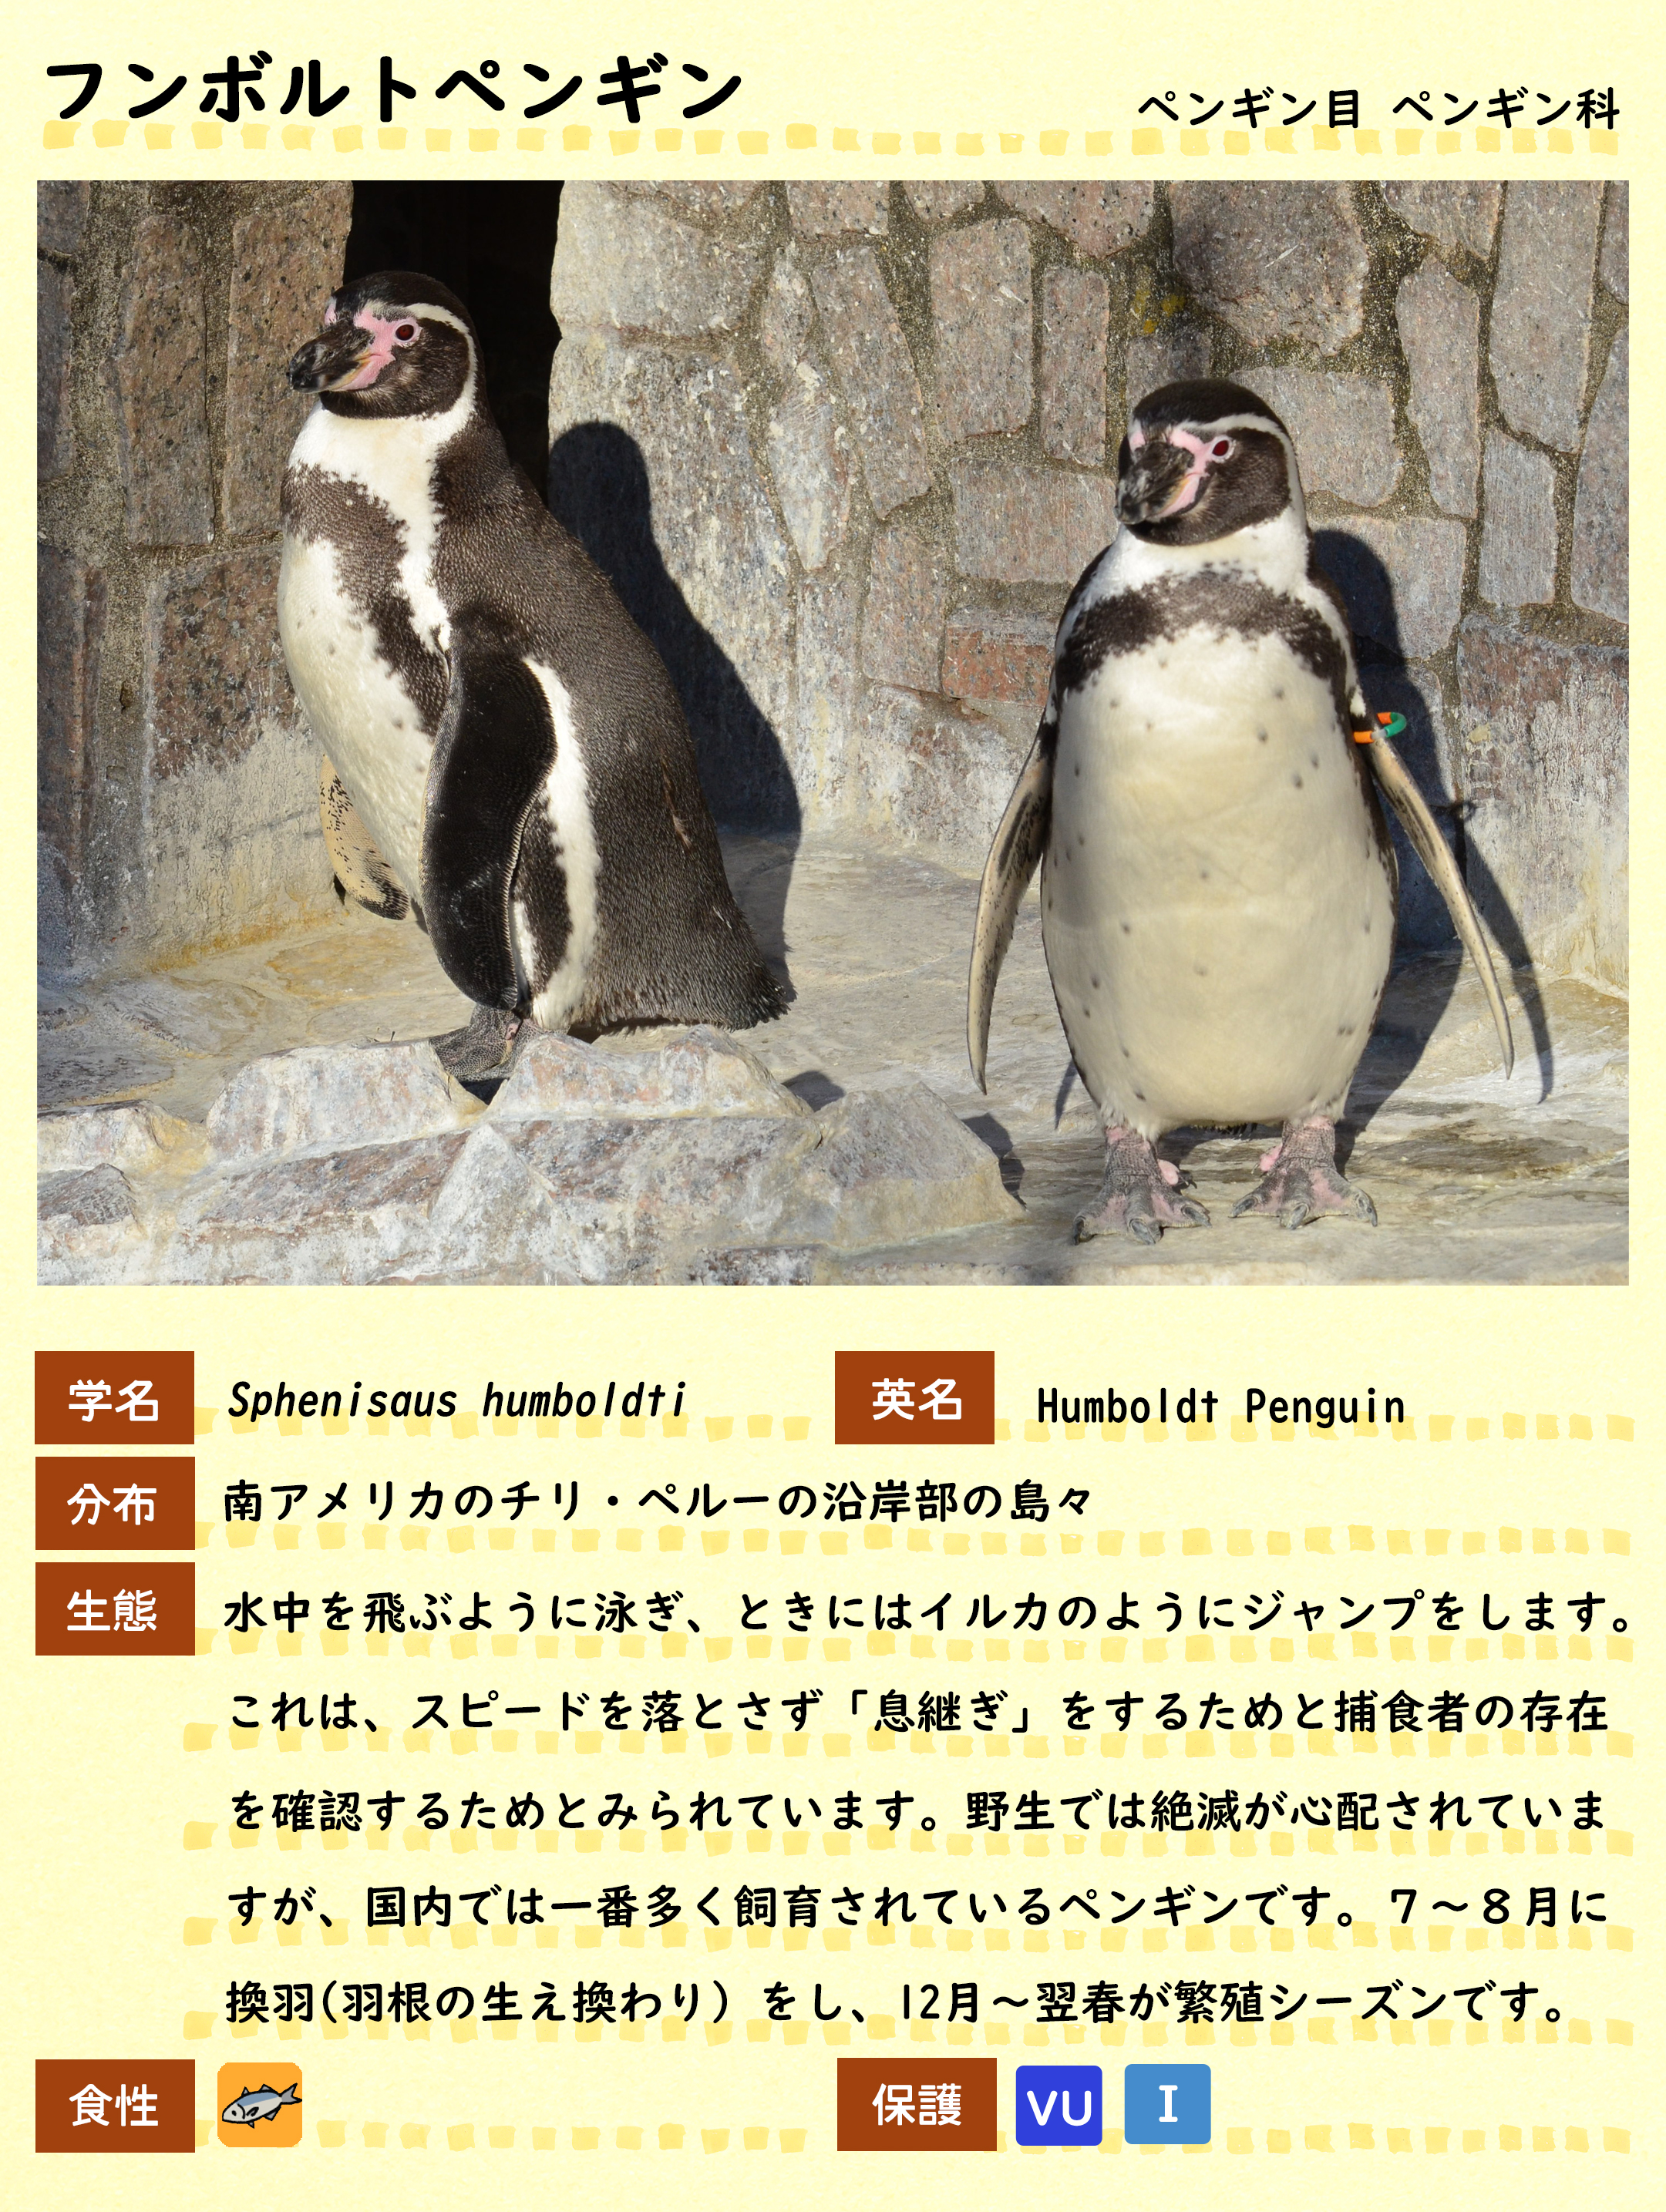 フンボルトペンギン 動物紹介 自然動物園 公益財団法人 えどがわ環境財団